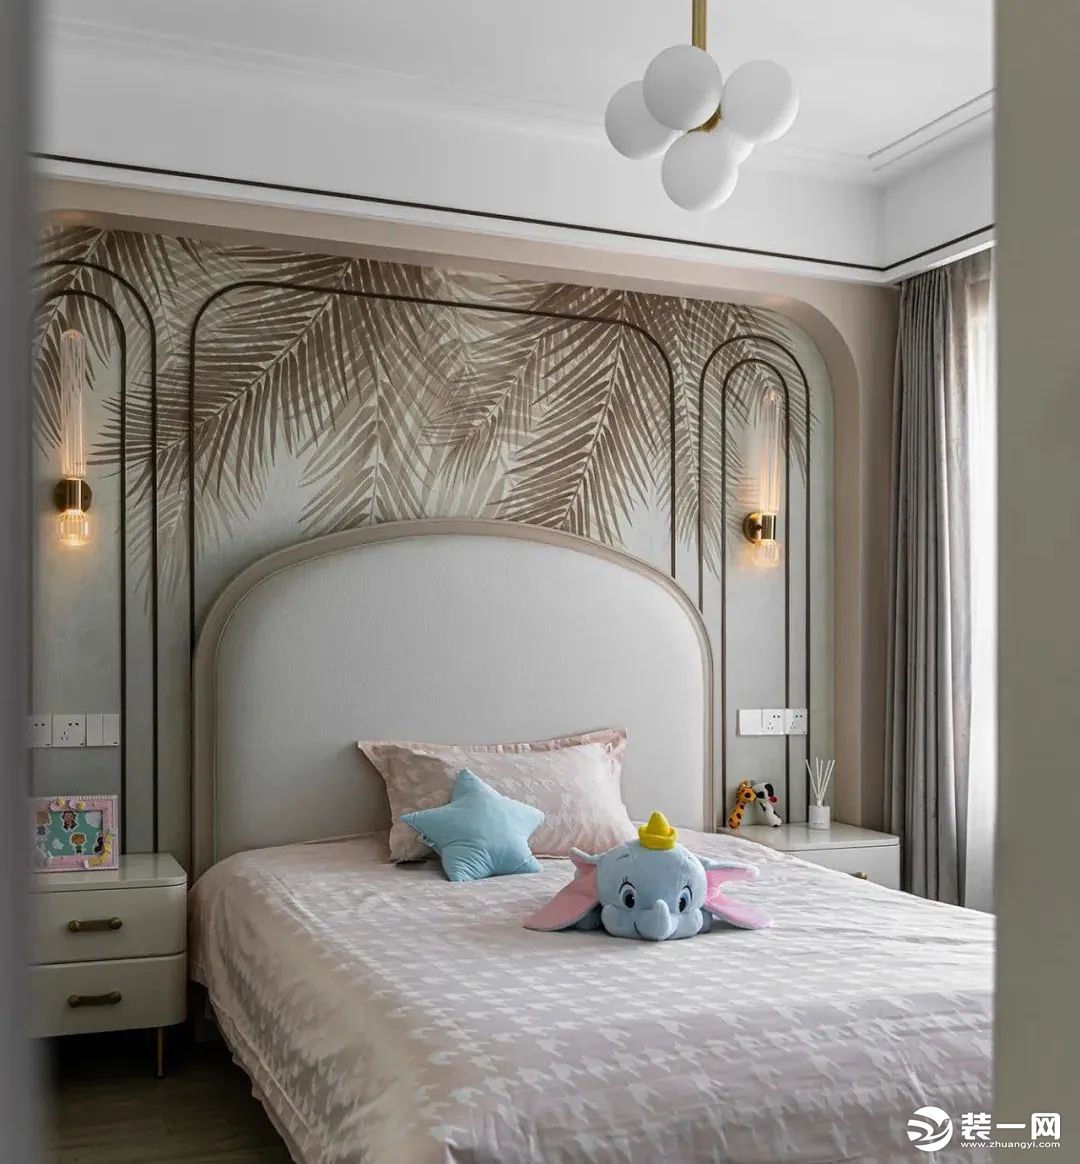 女儿房，温柔的淡粉色床品象征着女孩子的可爱，床头背景棕色枝叶墙纸，弧形线条处理，两盏壁灯点缀，带来优